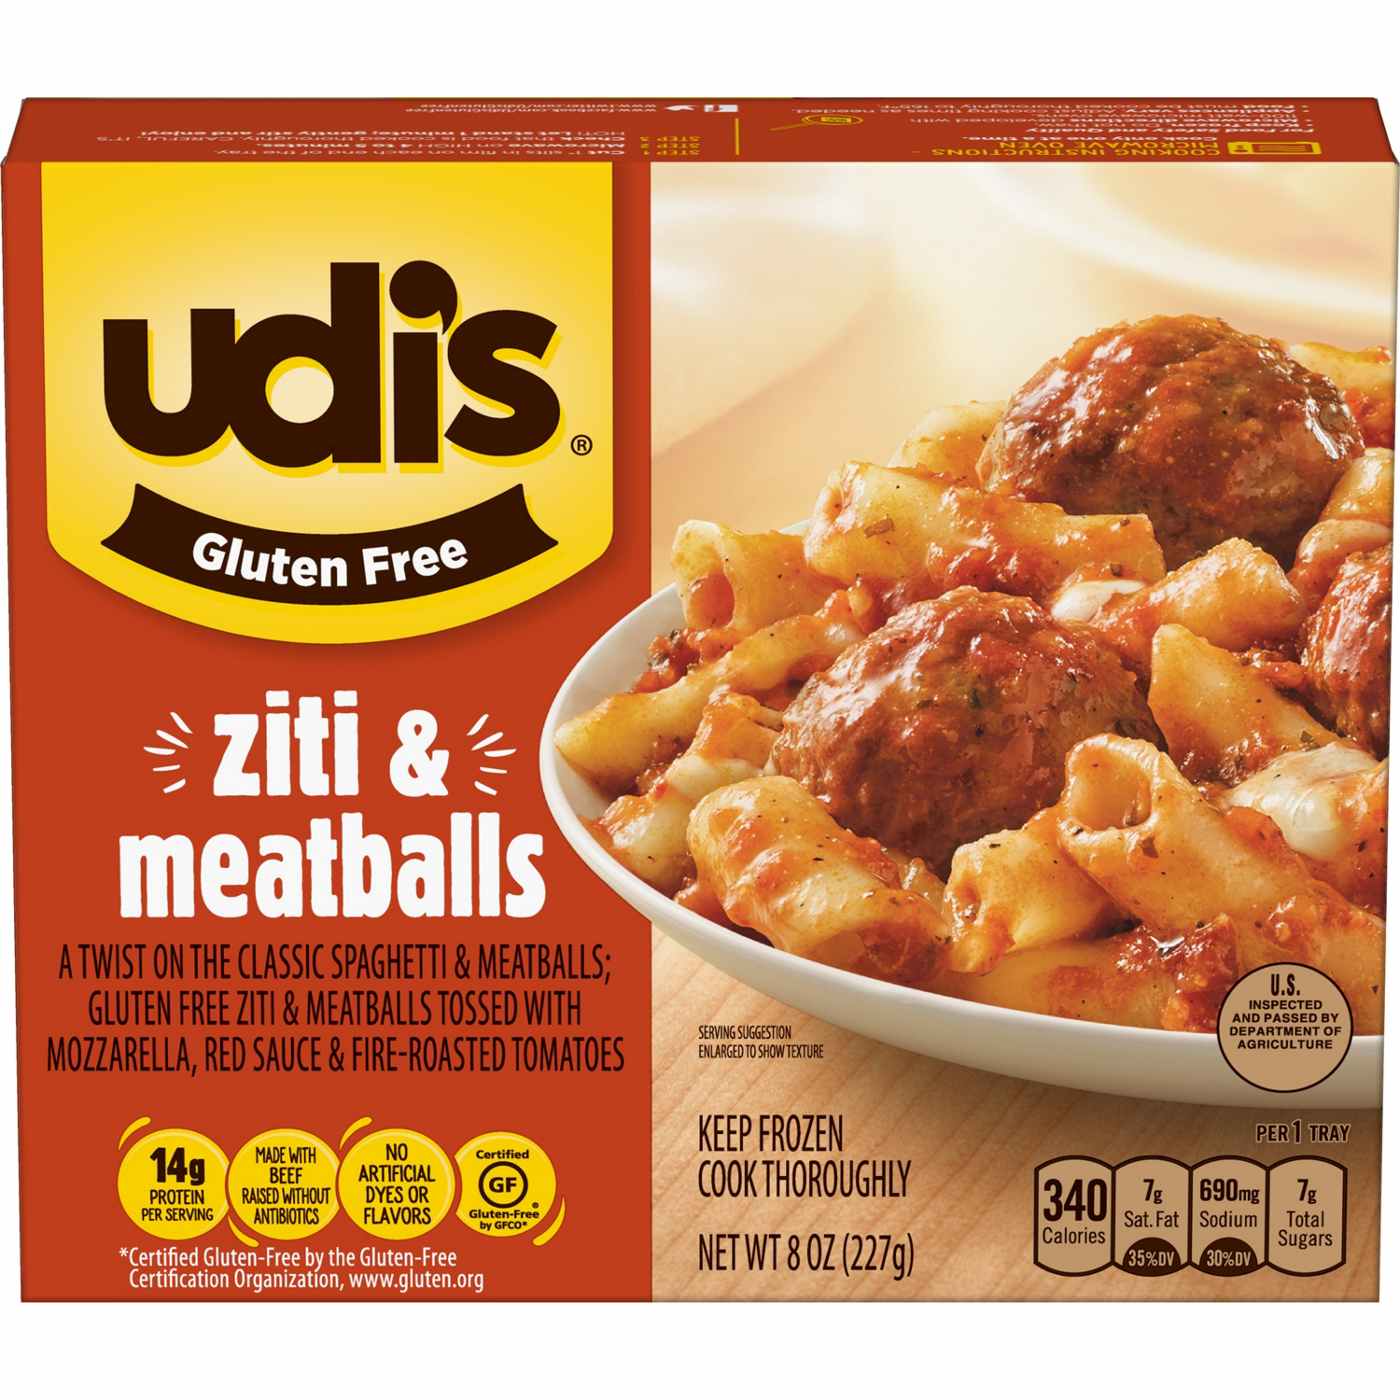 Udi's Gluten-Free Ziti & Meatballs Frozen Meal; image 1 of 7